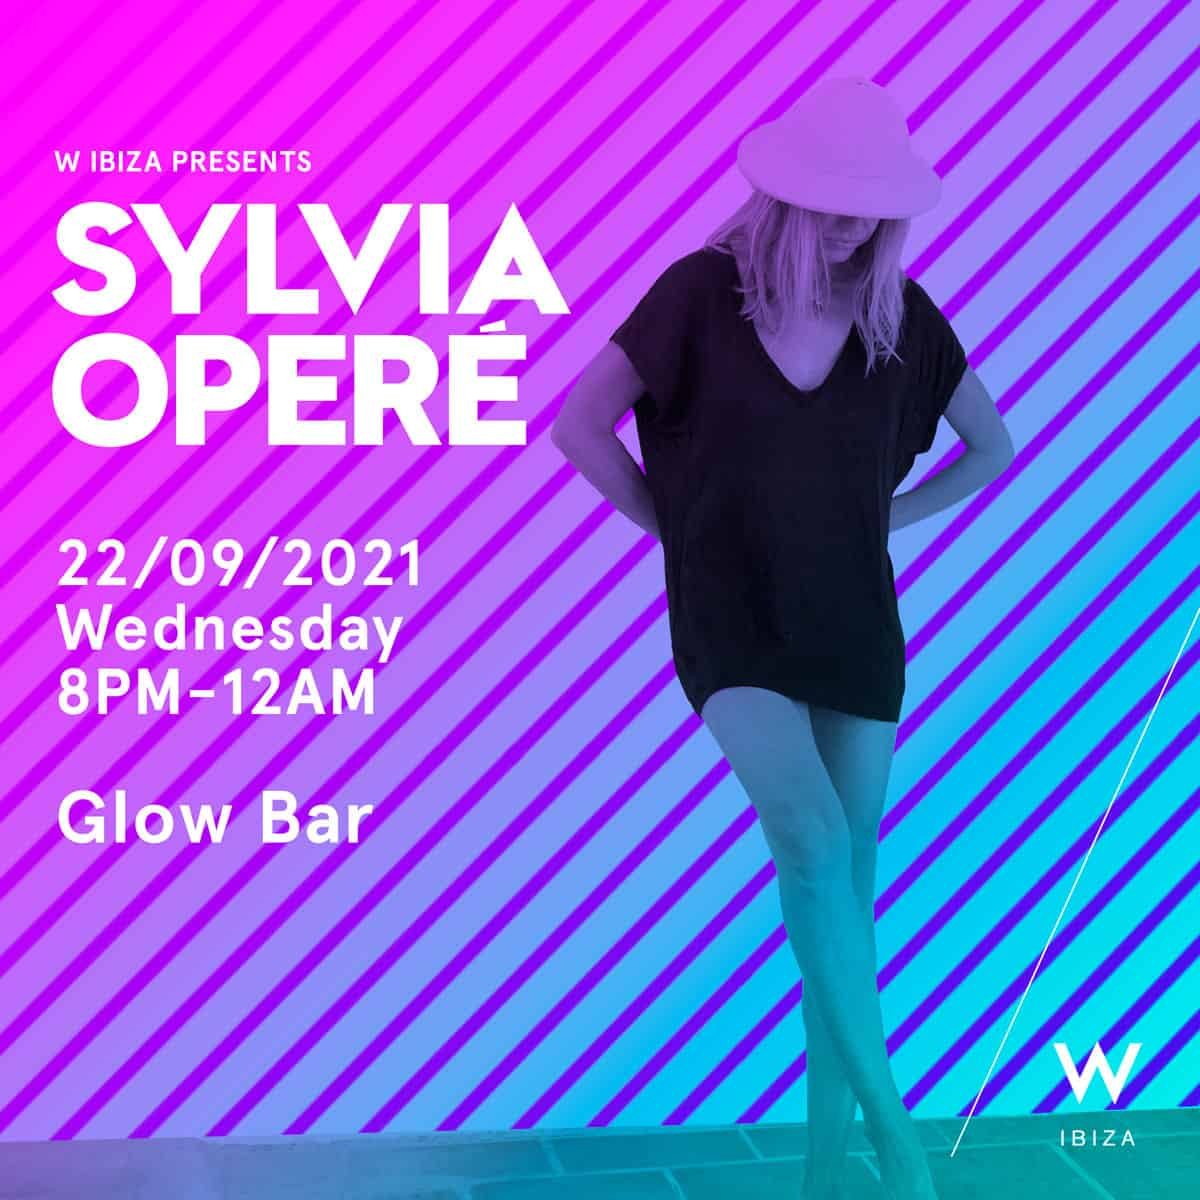 sylvia-opere-w-ibiza-hotel-2021-welcometoibiza